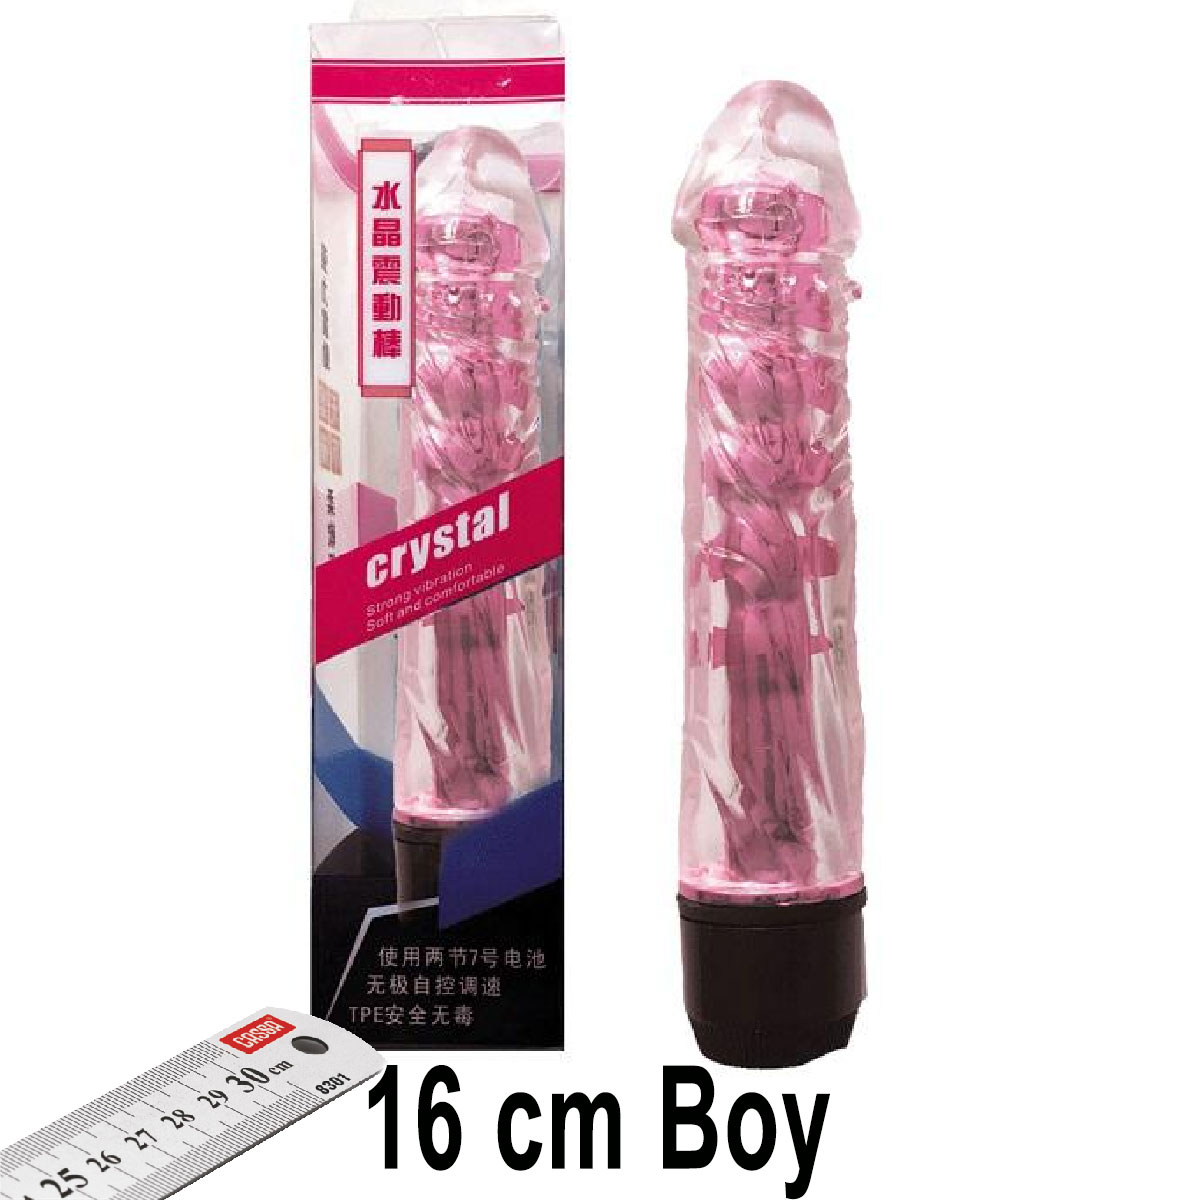 Crystal 16 cm Boy Pembe Renk Vibratr ve Zevk Klf Seti AL-Q028-3